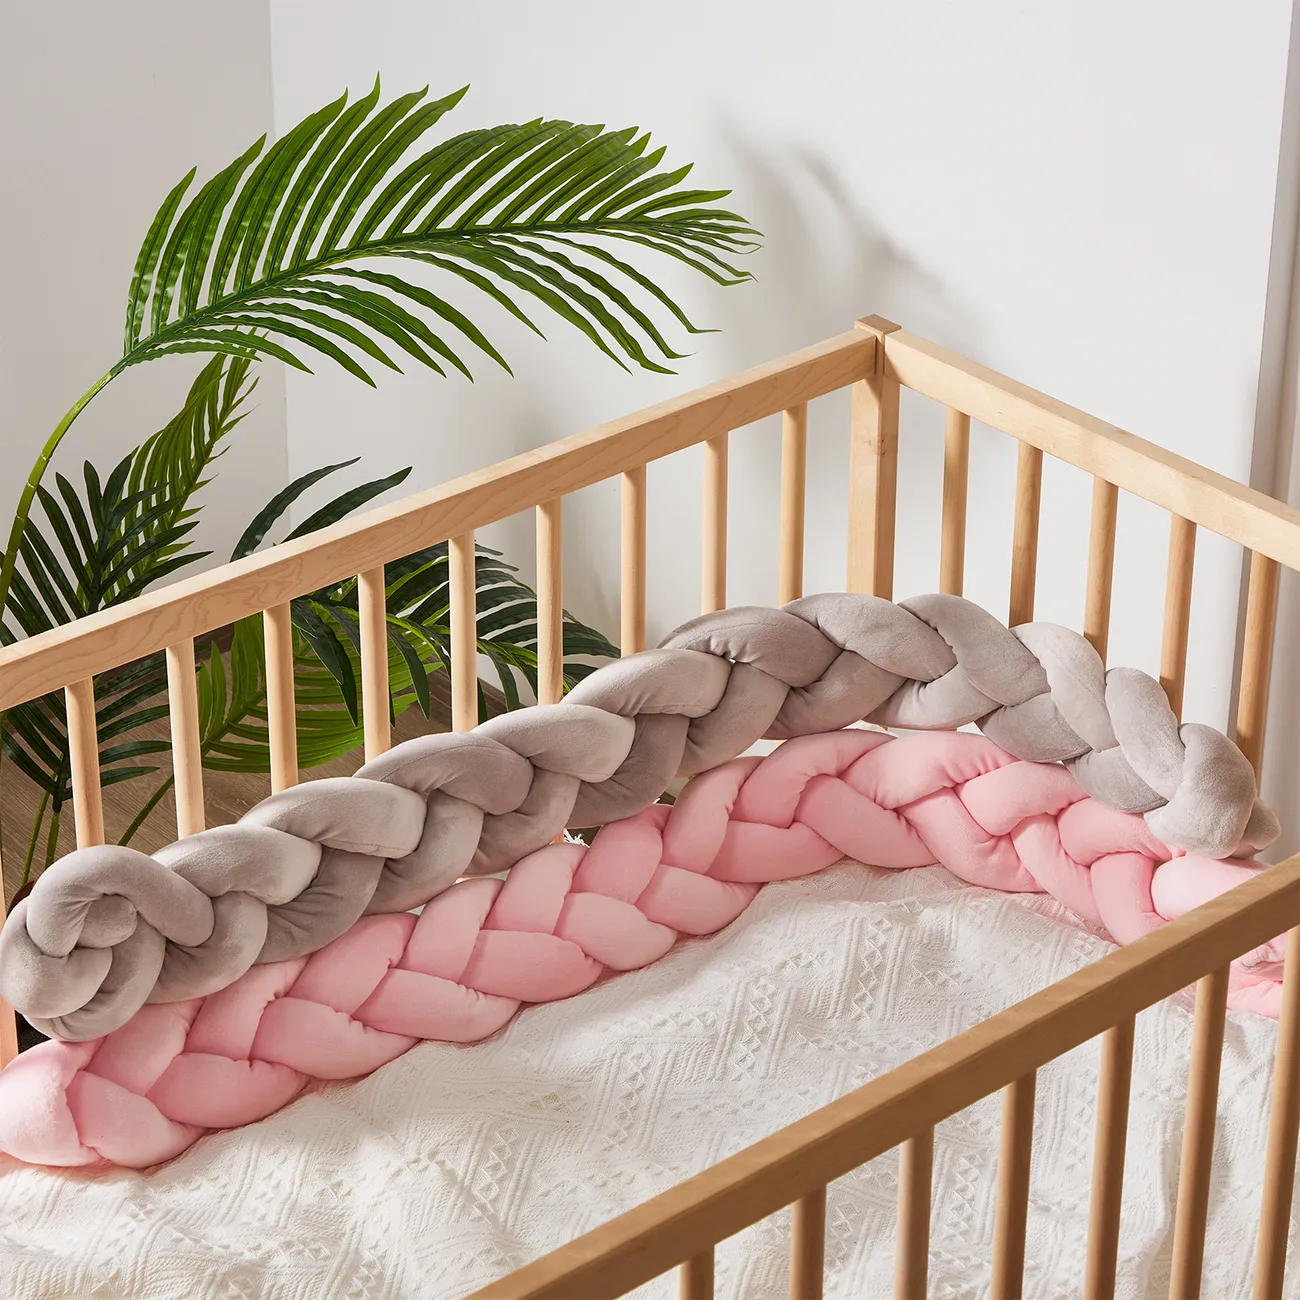 مصد سرير الطفل مع تصميم مضاد للتصادم اللون الرمادي big image 1